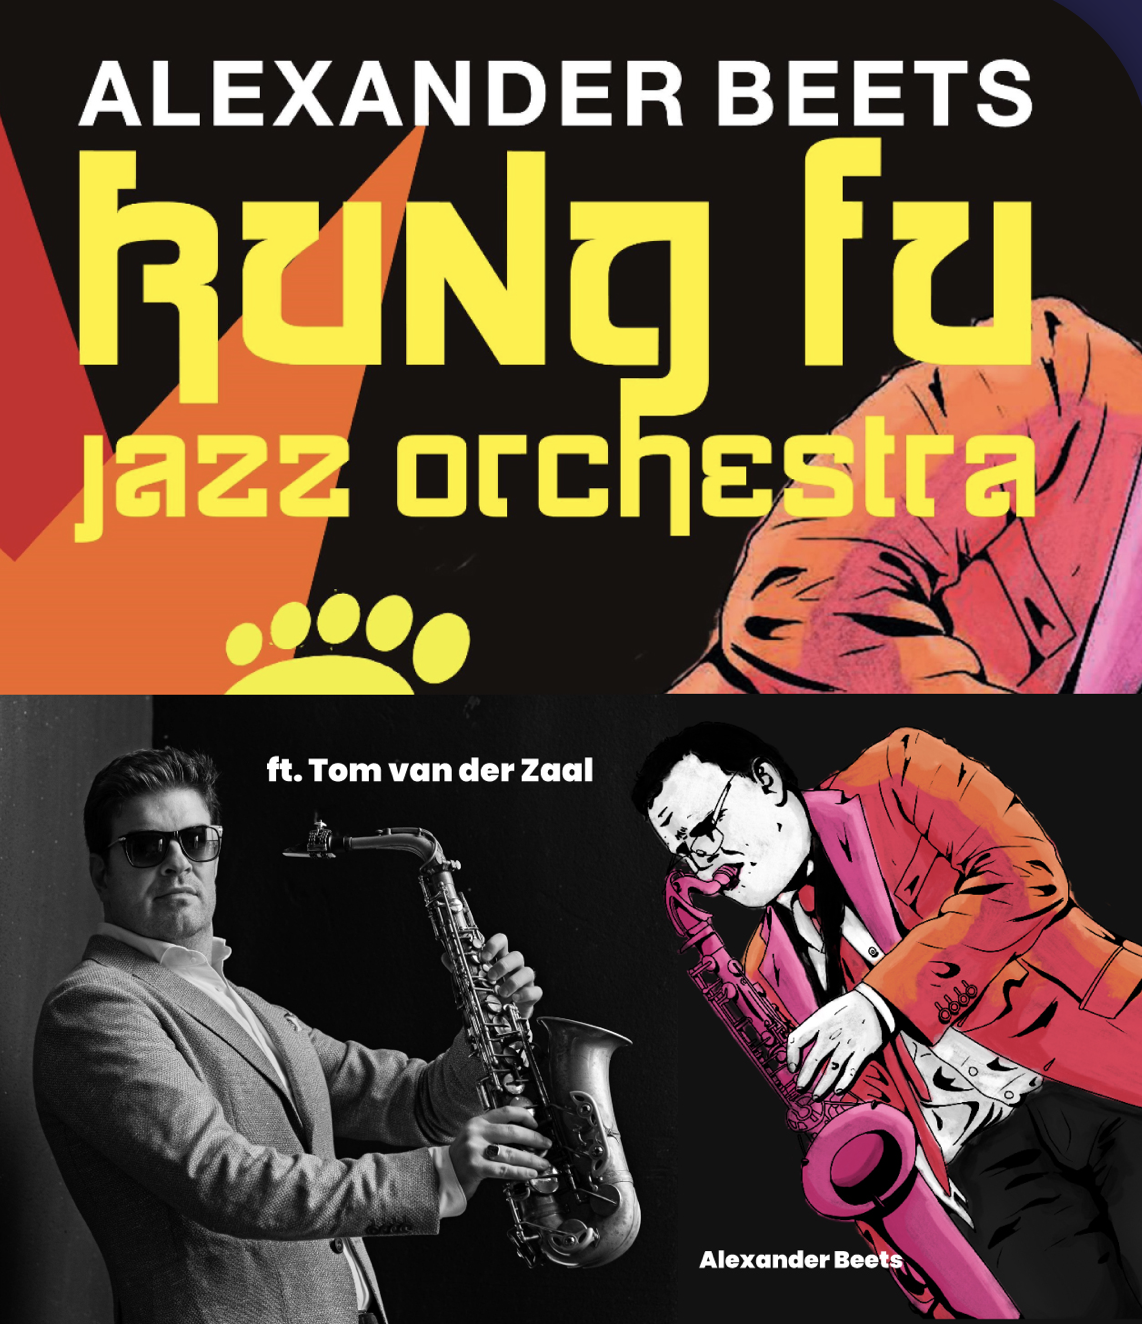 Jazzclub Voorburg en Theater Ludens presenteren: Alexander Beets & Kungfu Jazz Orchestra ft. Tom van der Zaal